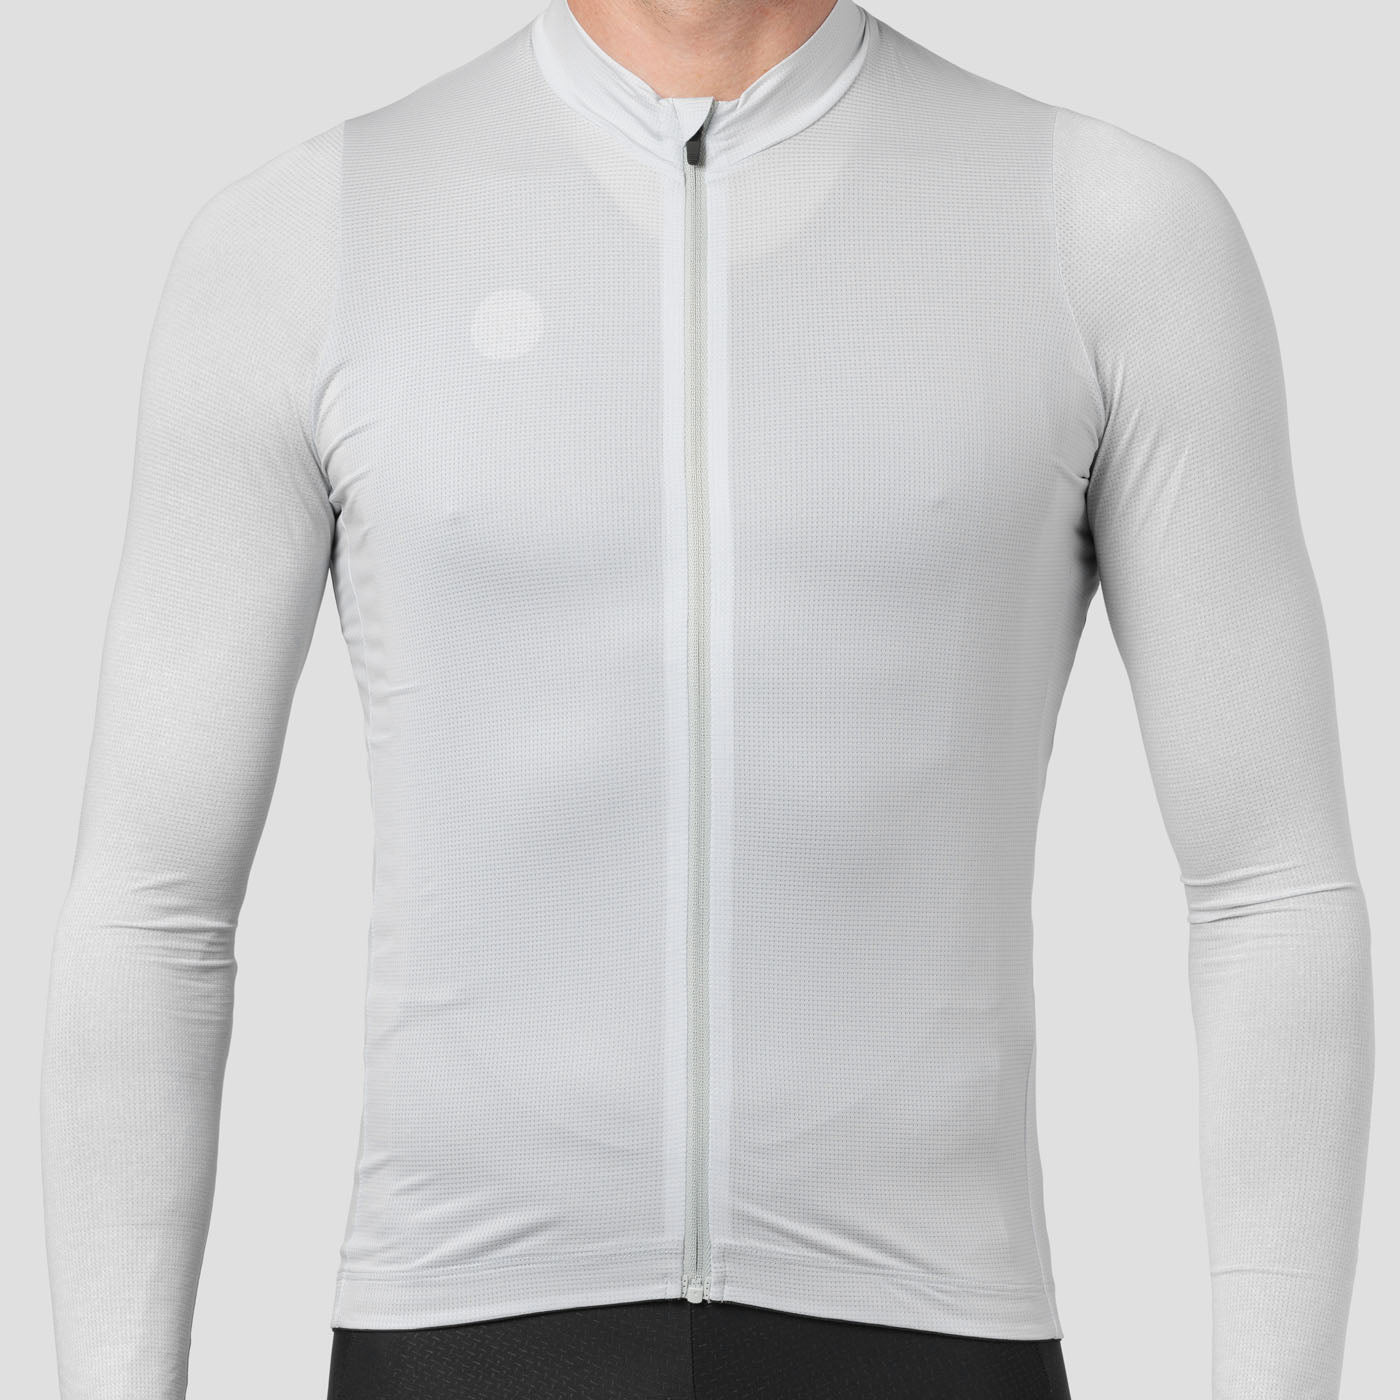 Norrøna Fjørå Equaliser Lightweight Long Sleeve - Cycling jersey Men's, Free EU Delivery